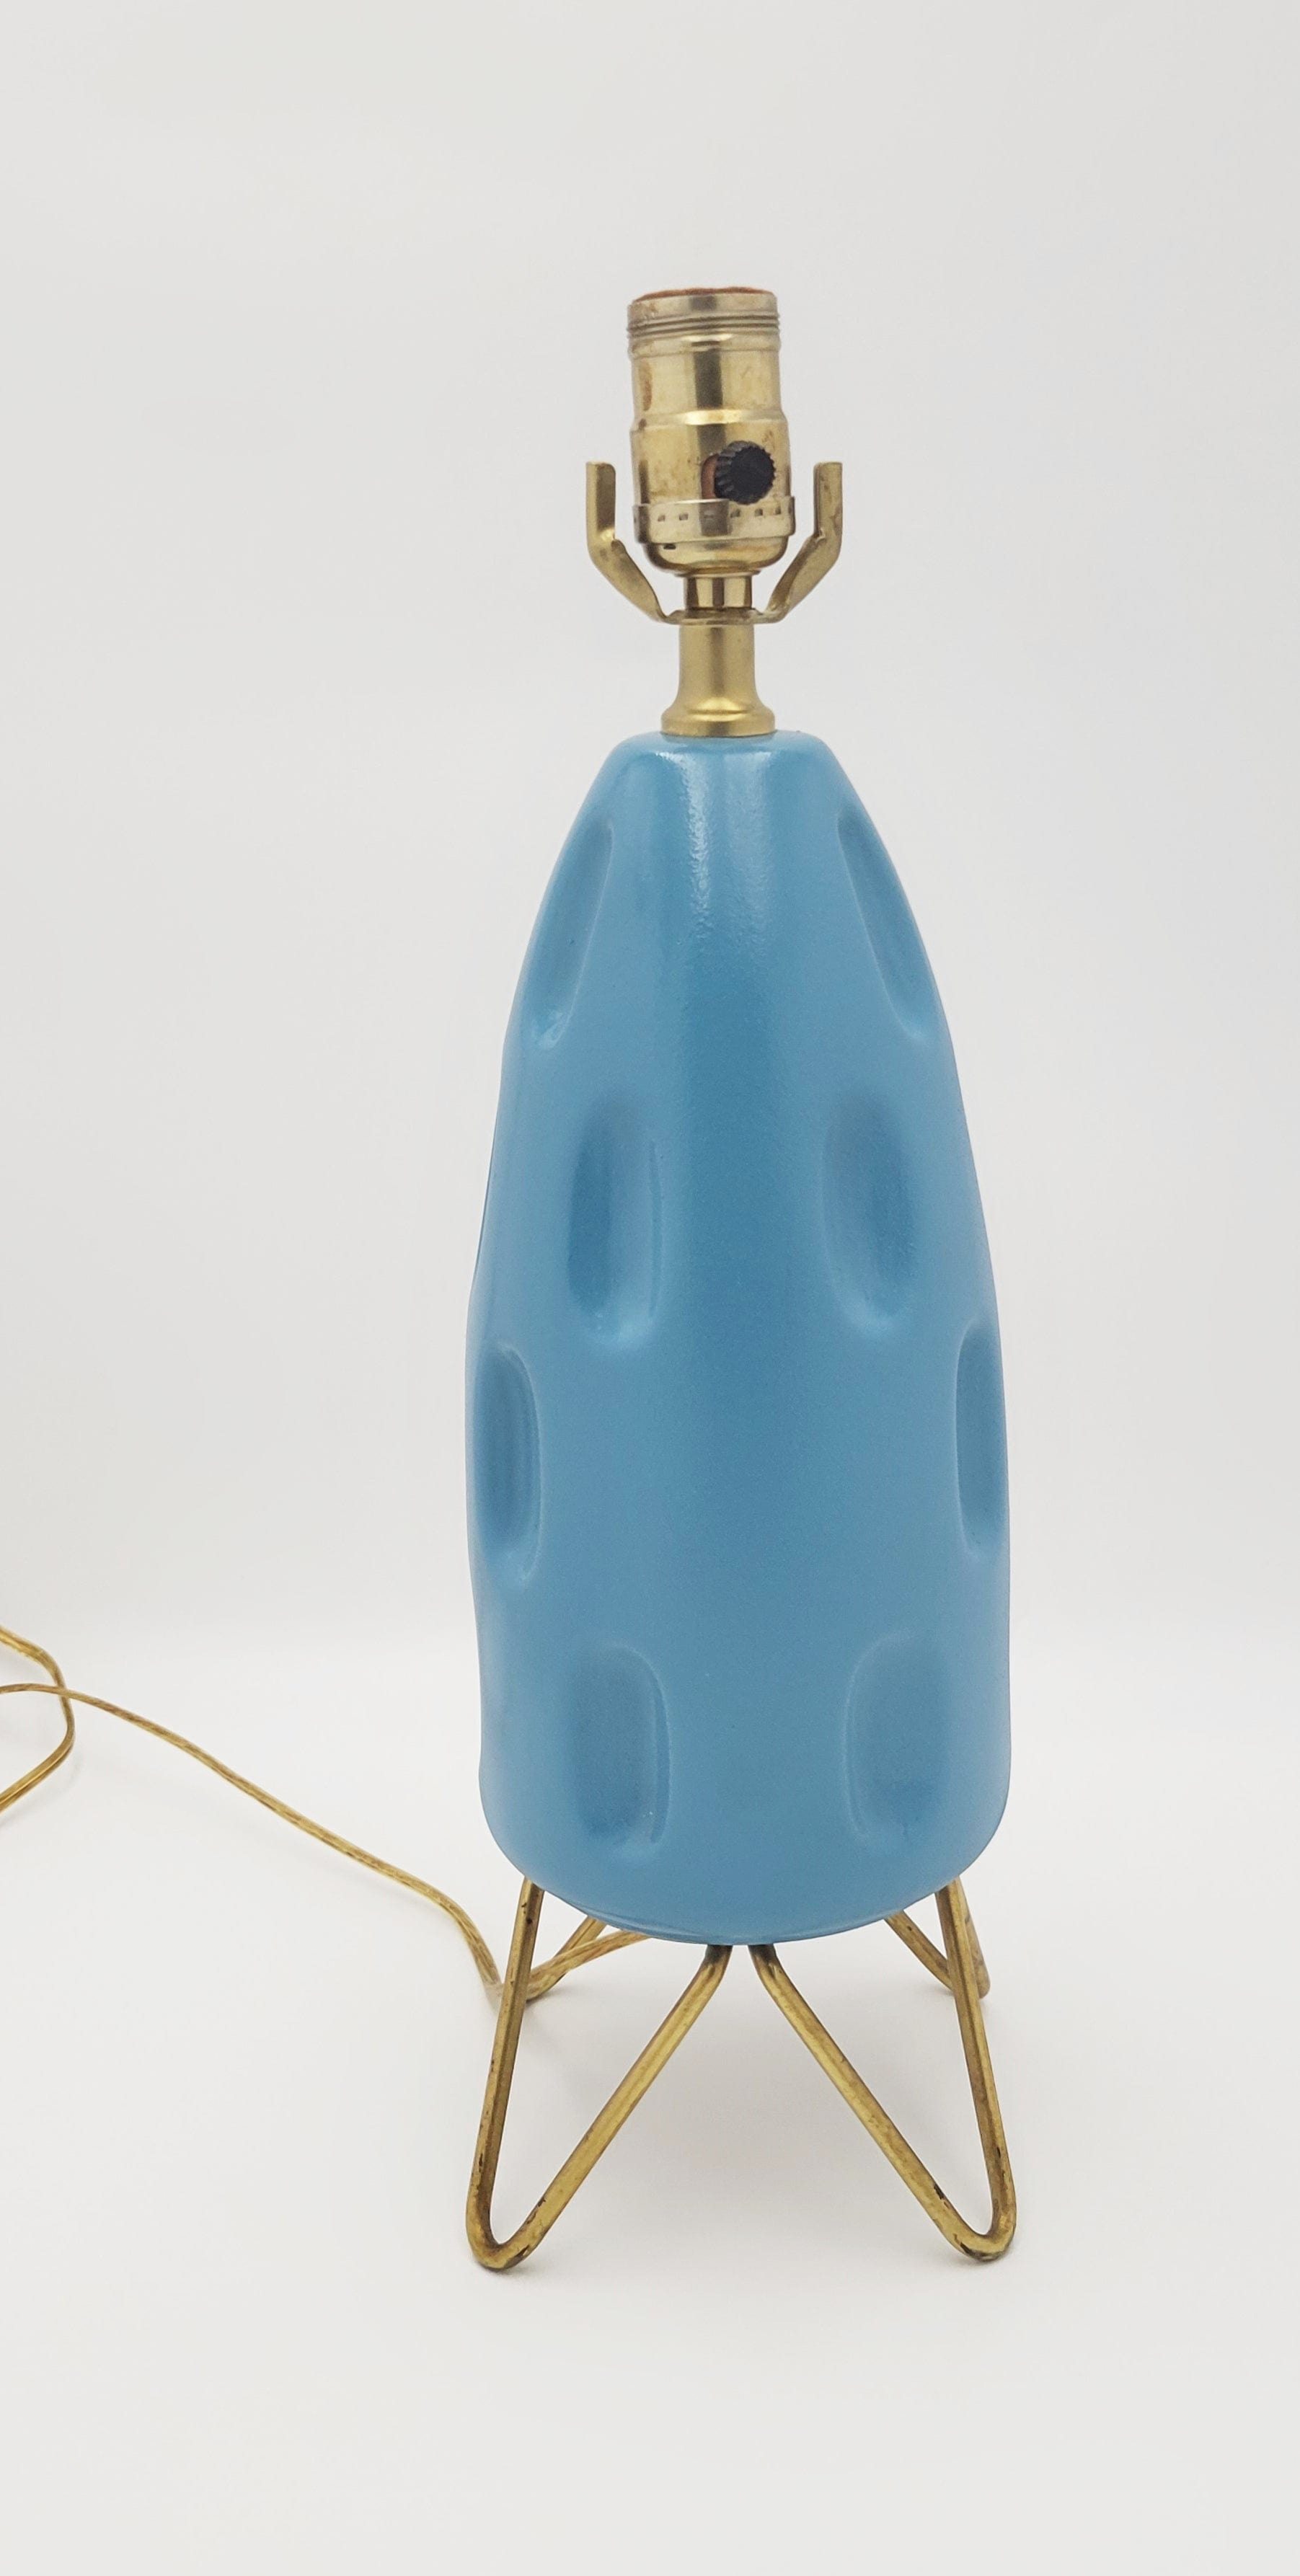 Gonder Bradley Lamp Lighting Gonder-Bradley Retro Turquoise Ceramic & Brass Hairpin Table Lamp 1960s